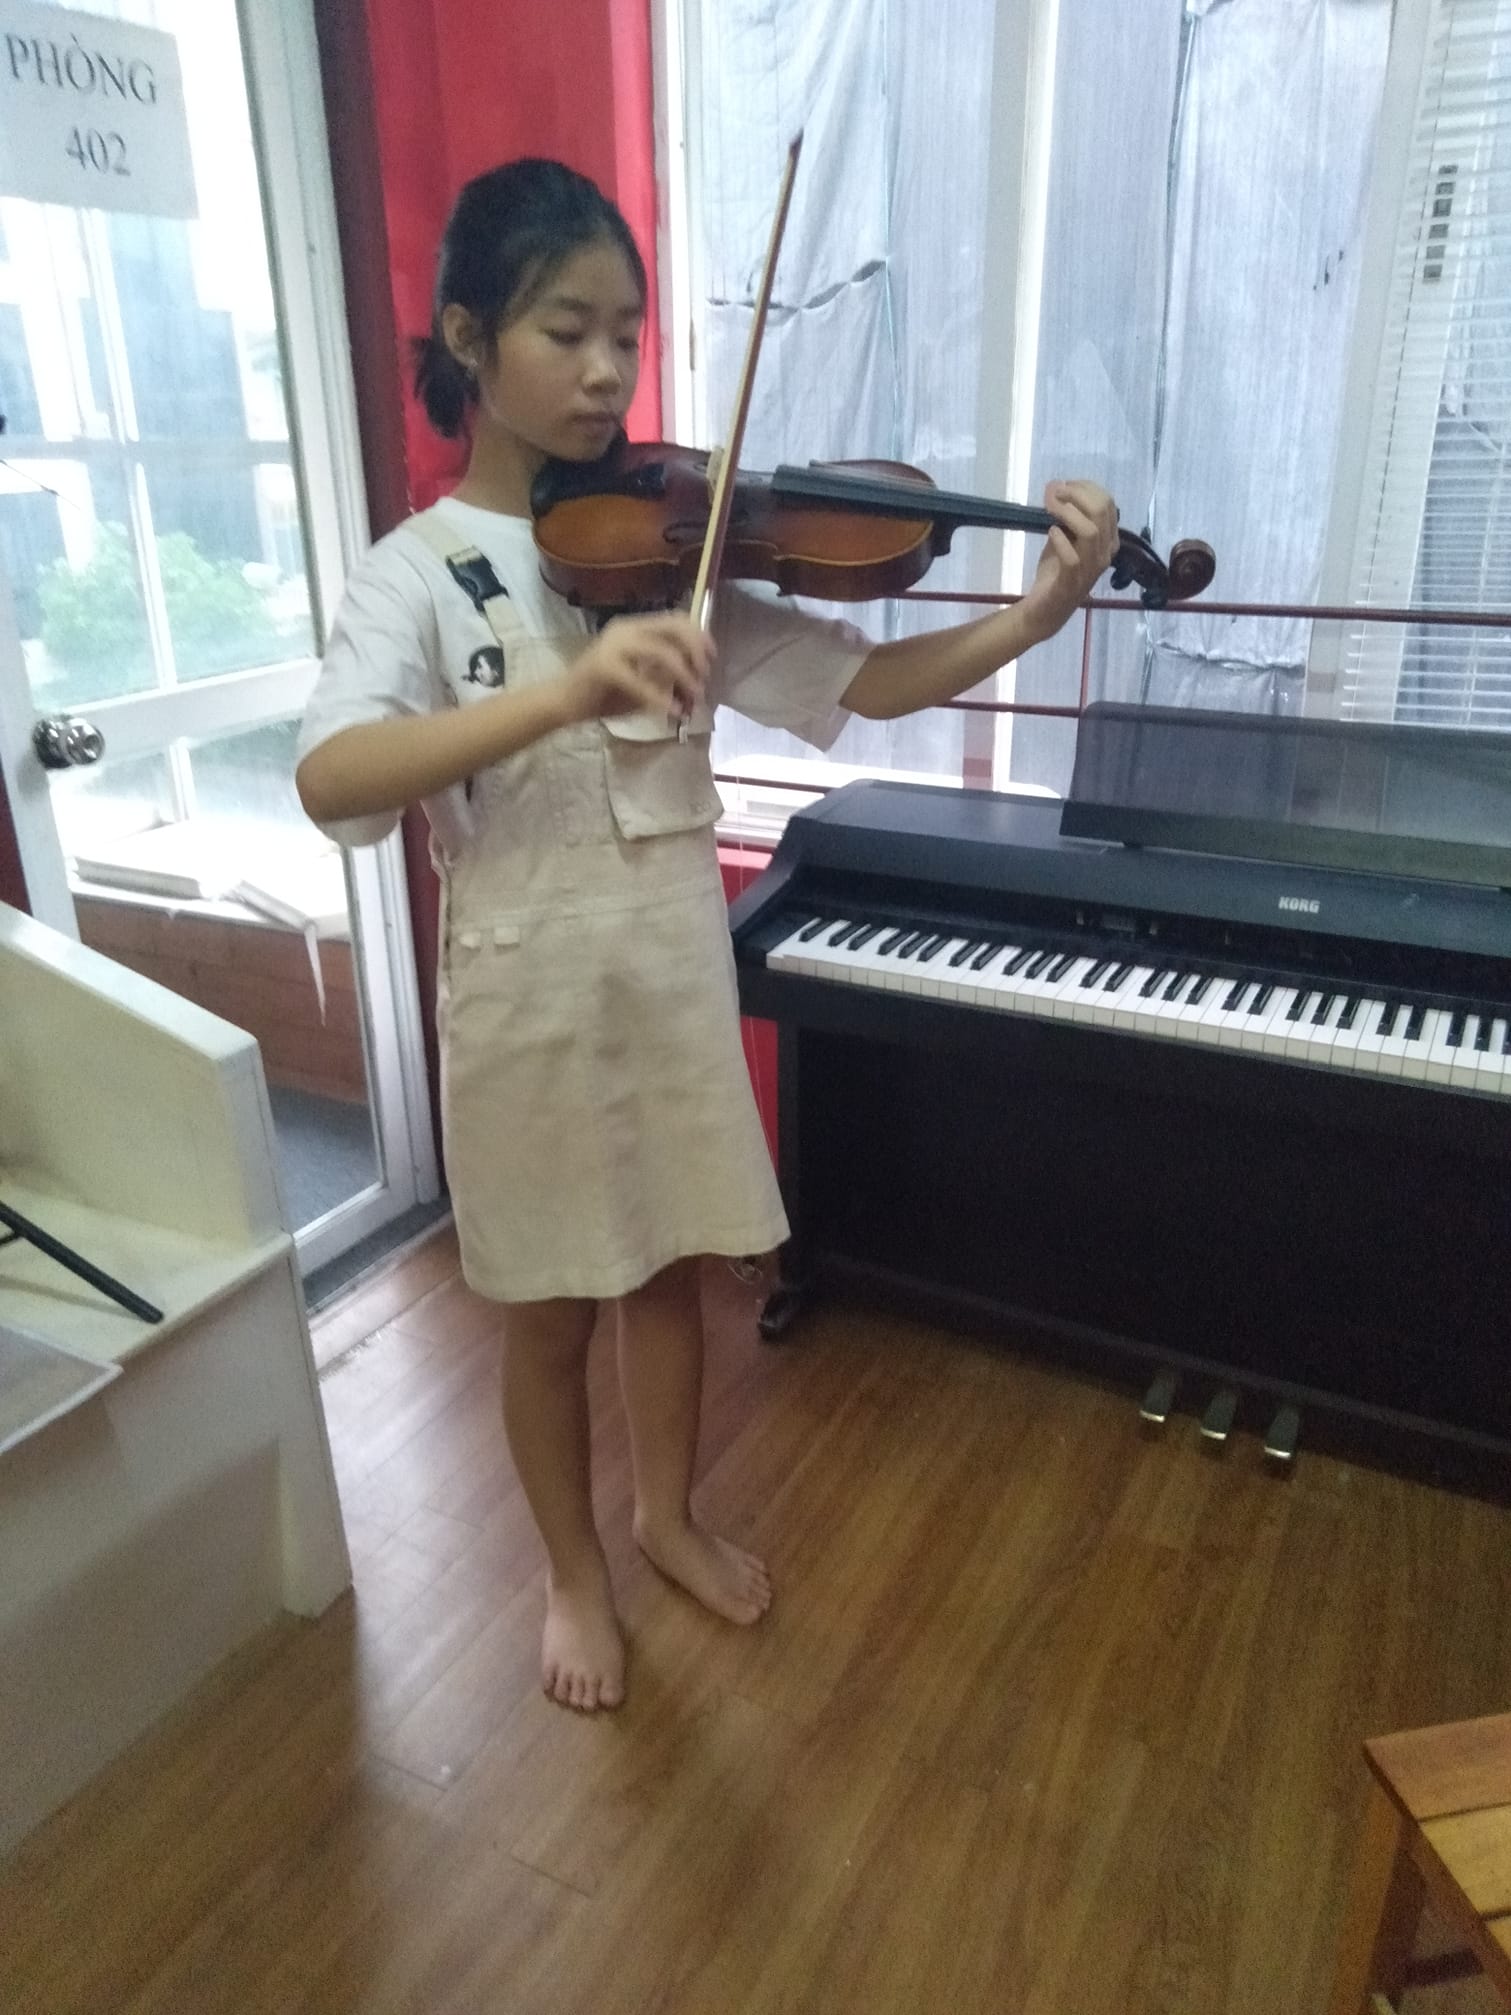 Cần làm gì trước khi học violin / Những điều cần biết